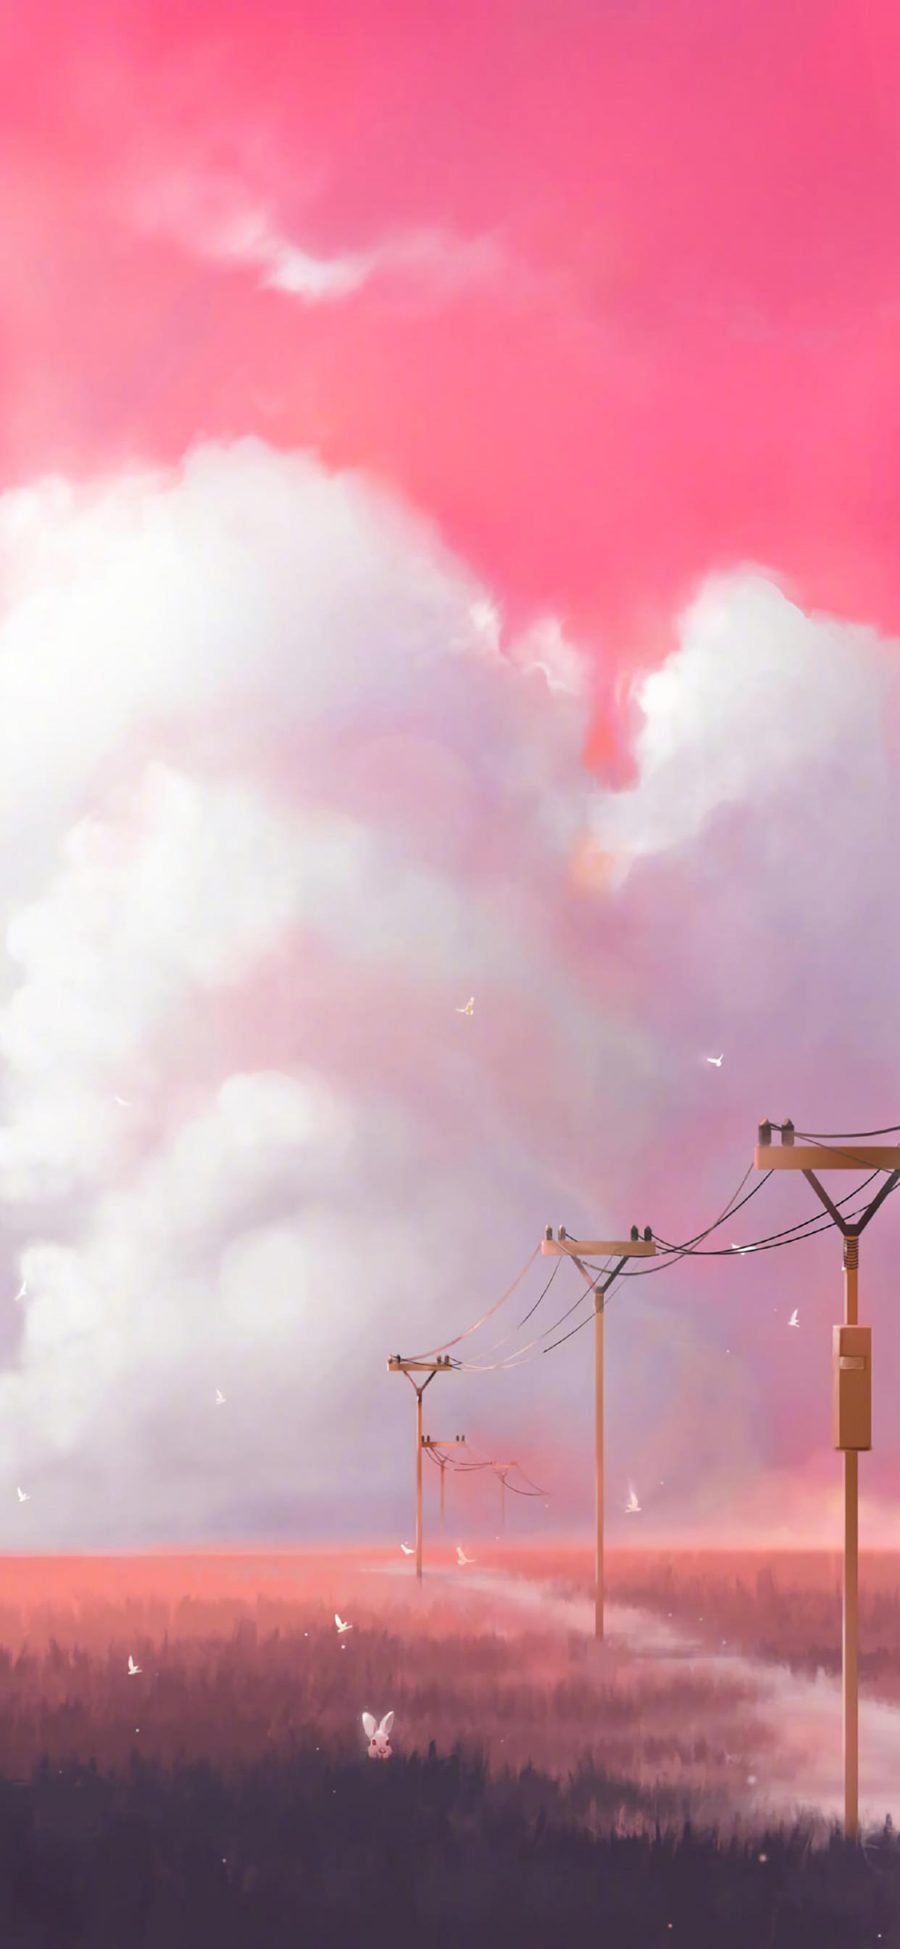 [2436×1125]插图 粉色 天空 兔子 电信杆 苹果手机动漫壁纸图片